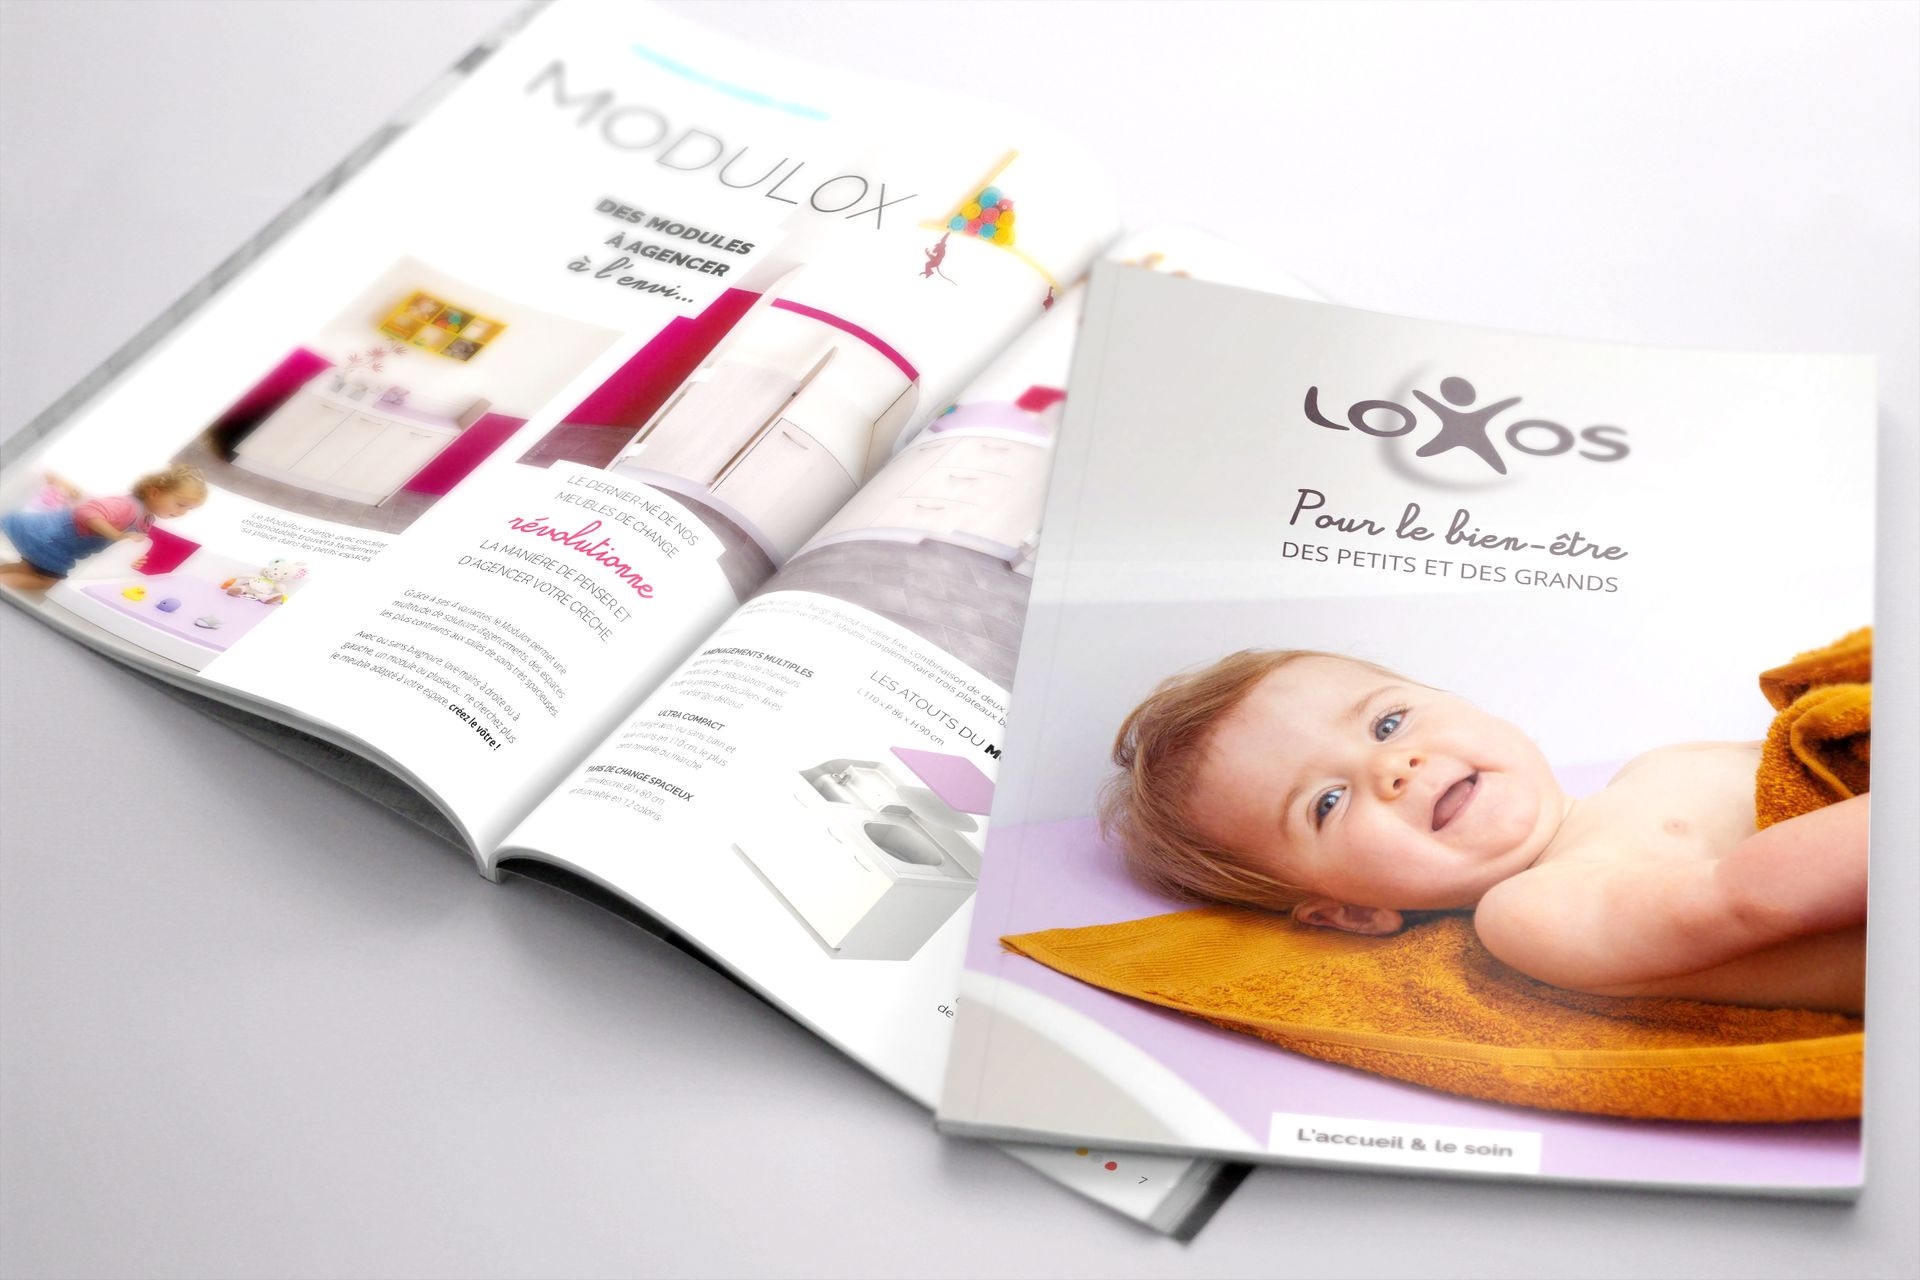 Image de couverture de la Story client Loxos - Catalogue